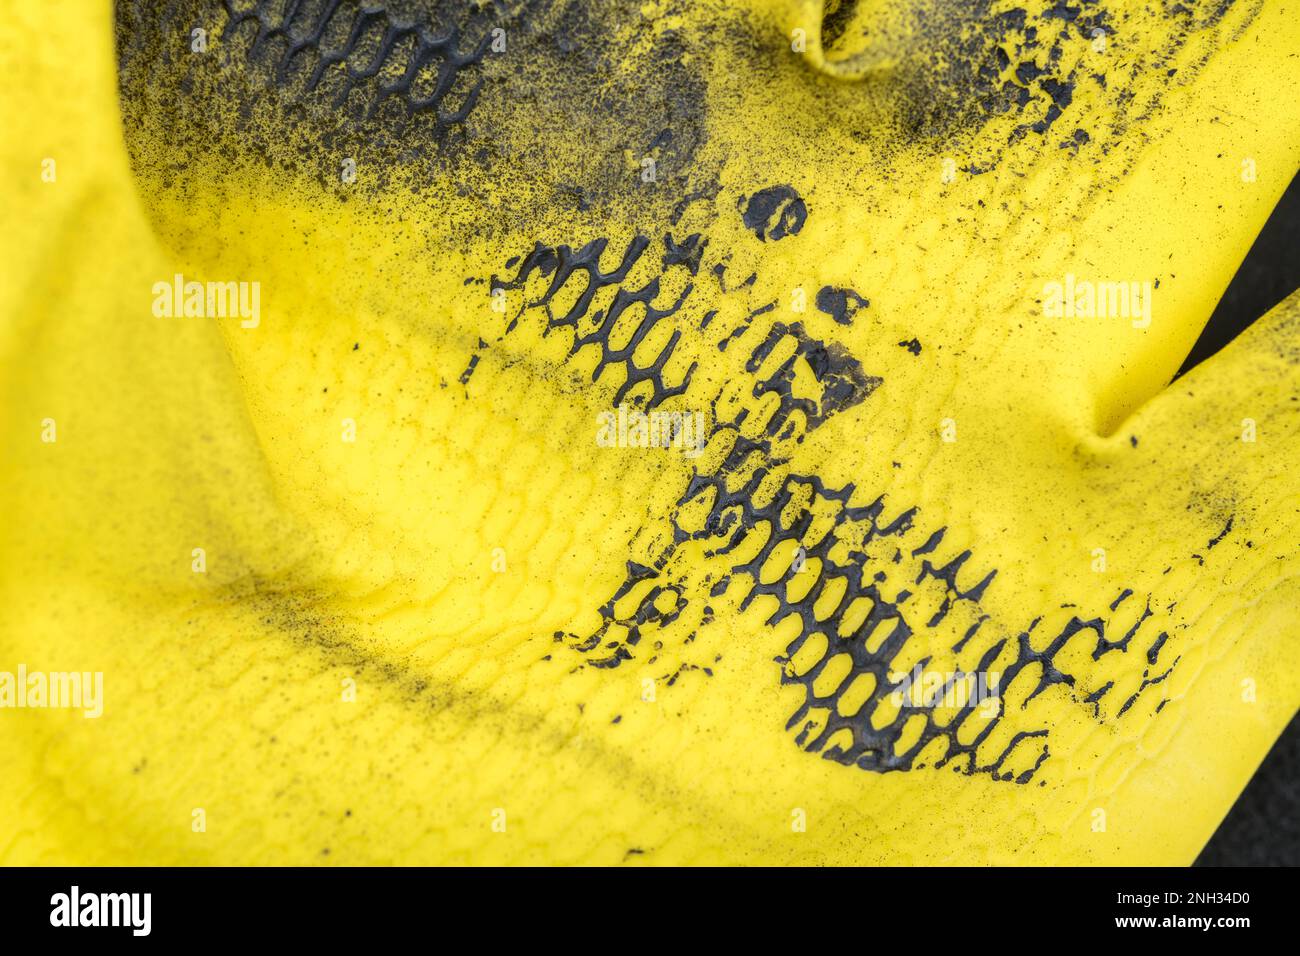 Schwarze Farbe auf die Oberfläche eines gelben Gummihandschuhs auftragen. Für eine schmutzige Metapher, oder für ein Chaos. Stockfoto